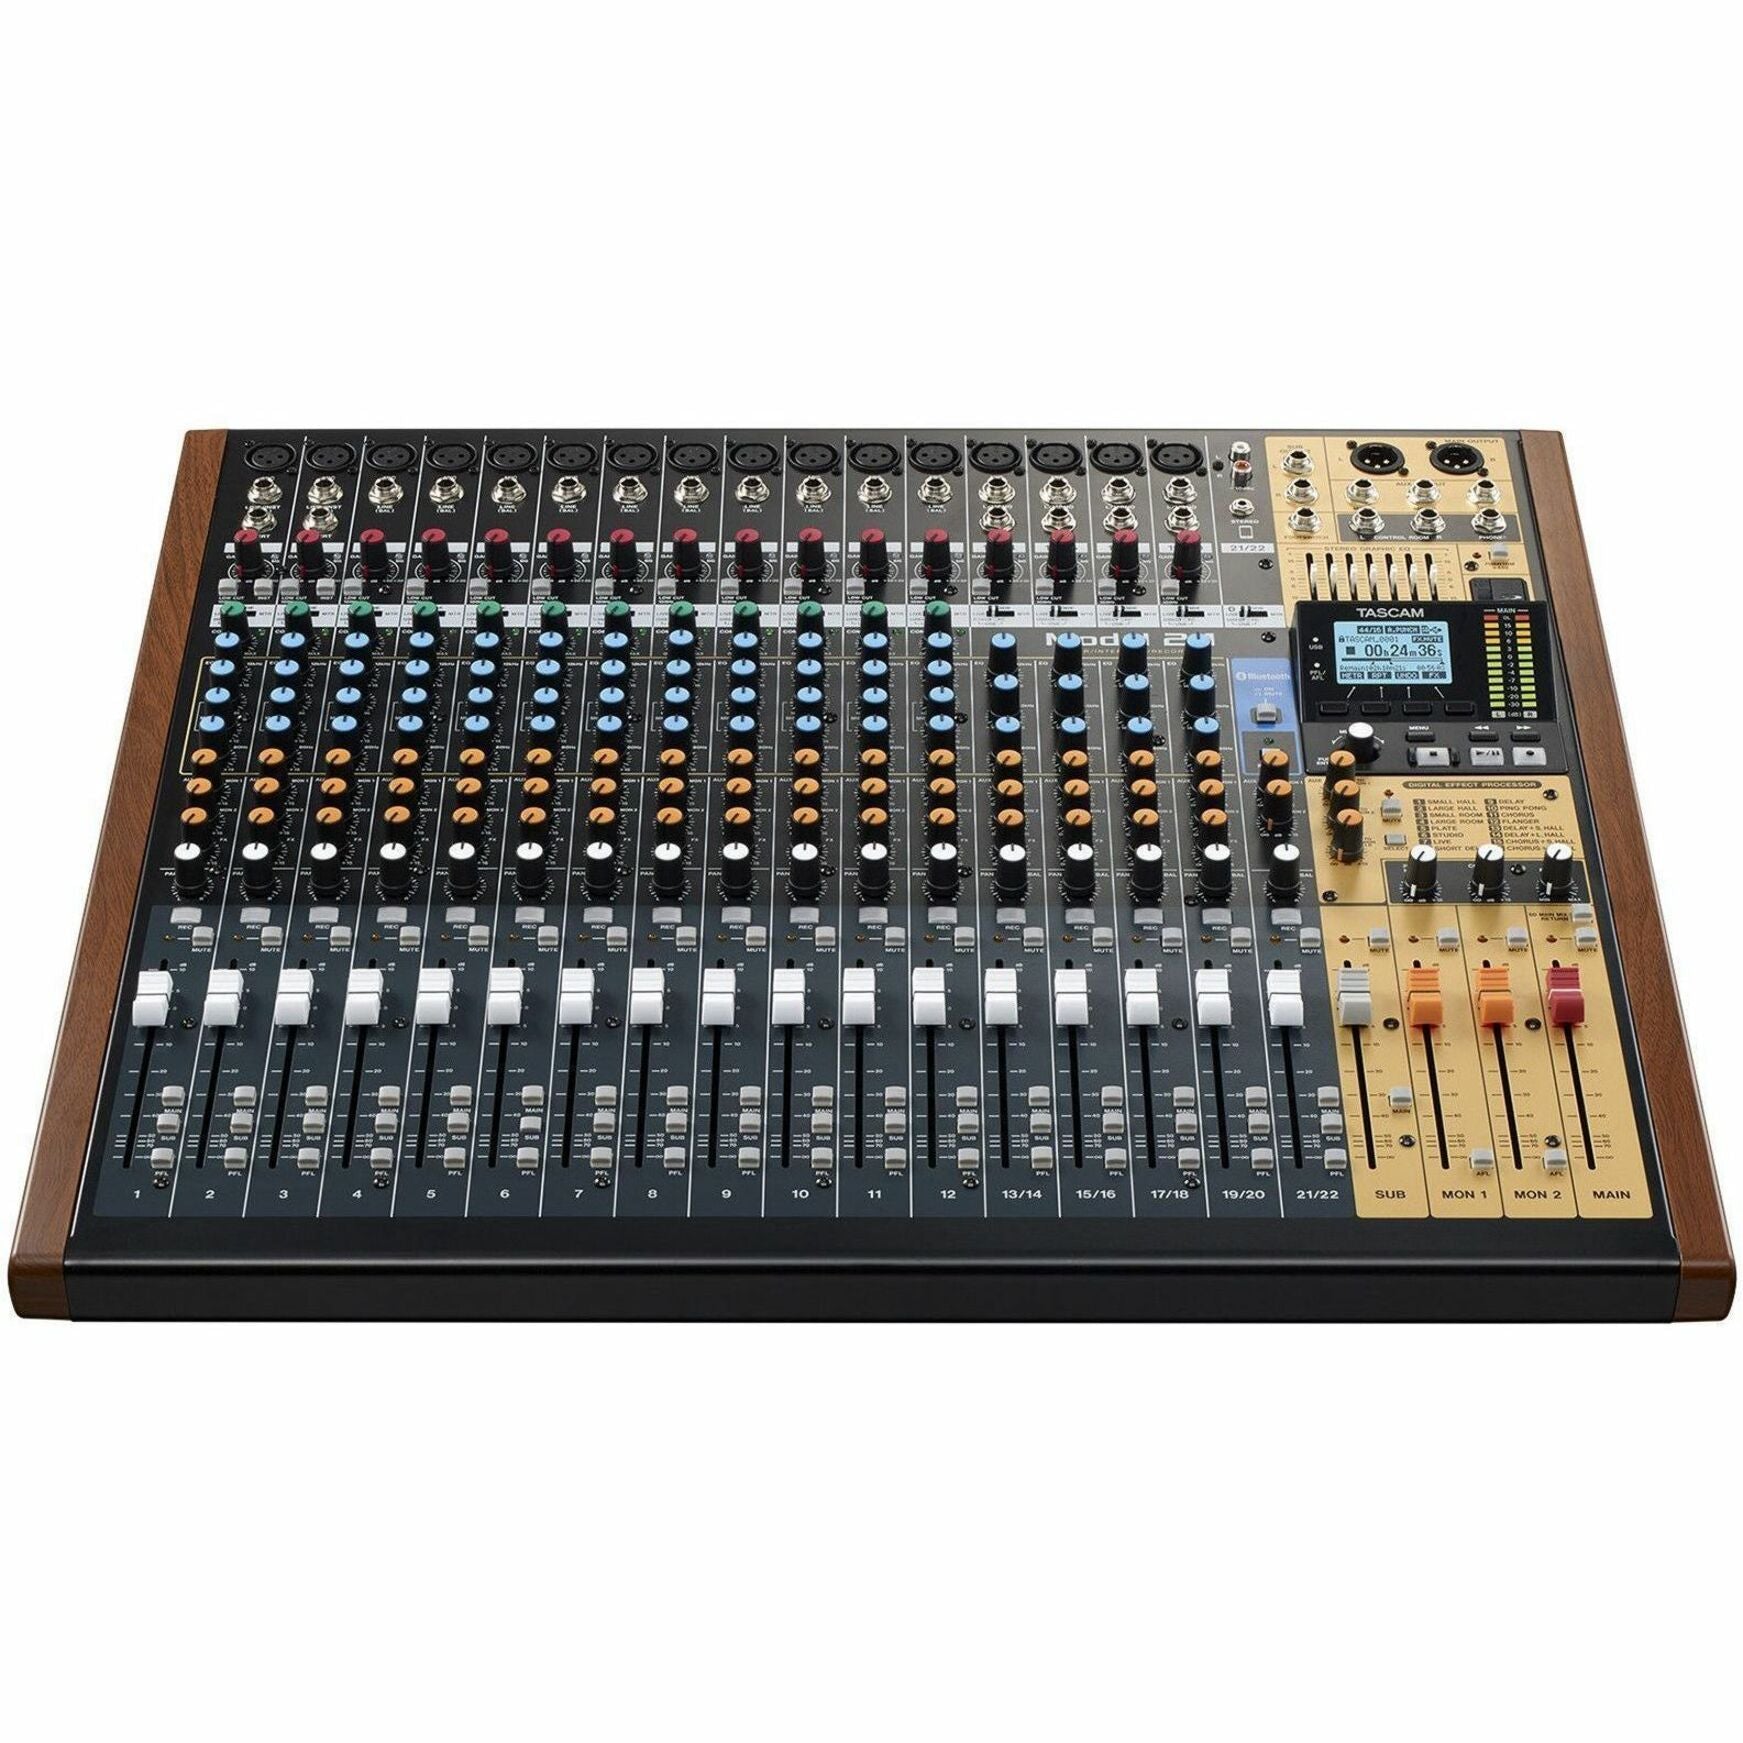 TASCAM Multi-Track Live Recording Console (MODEL 24)